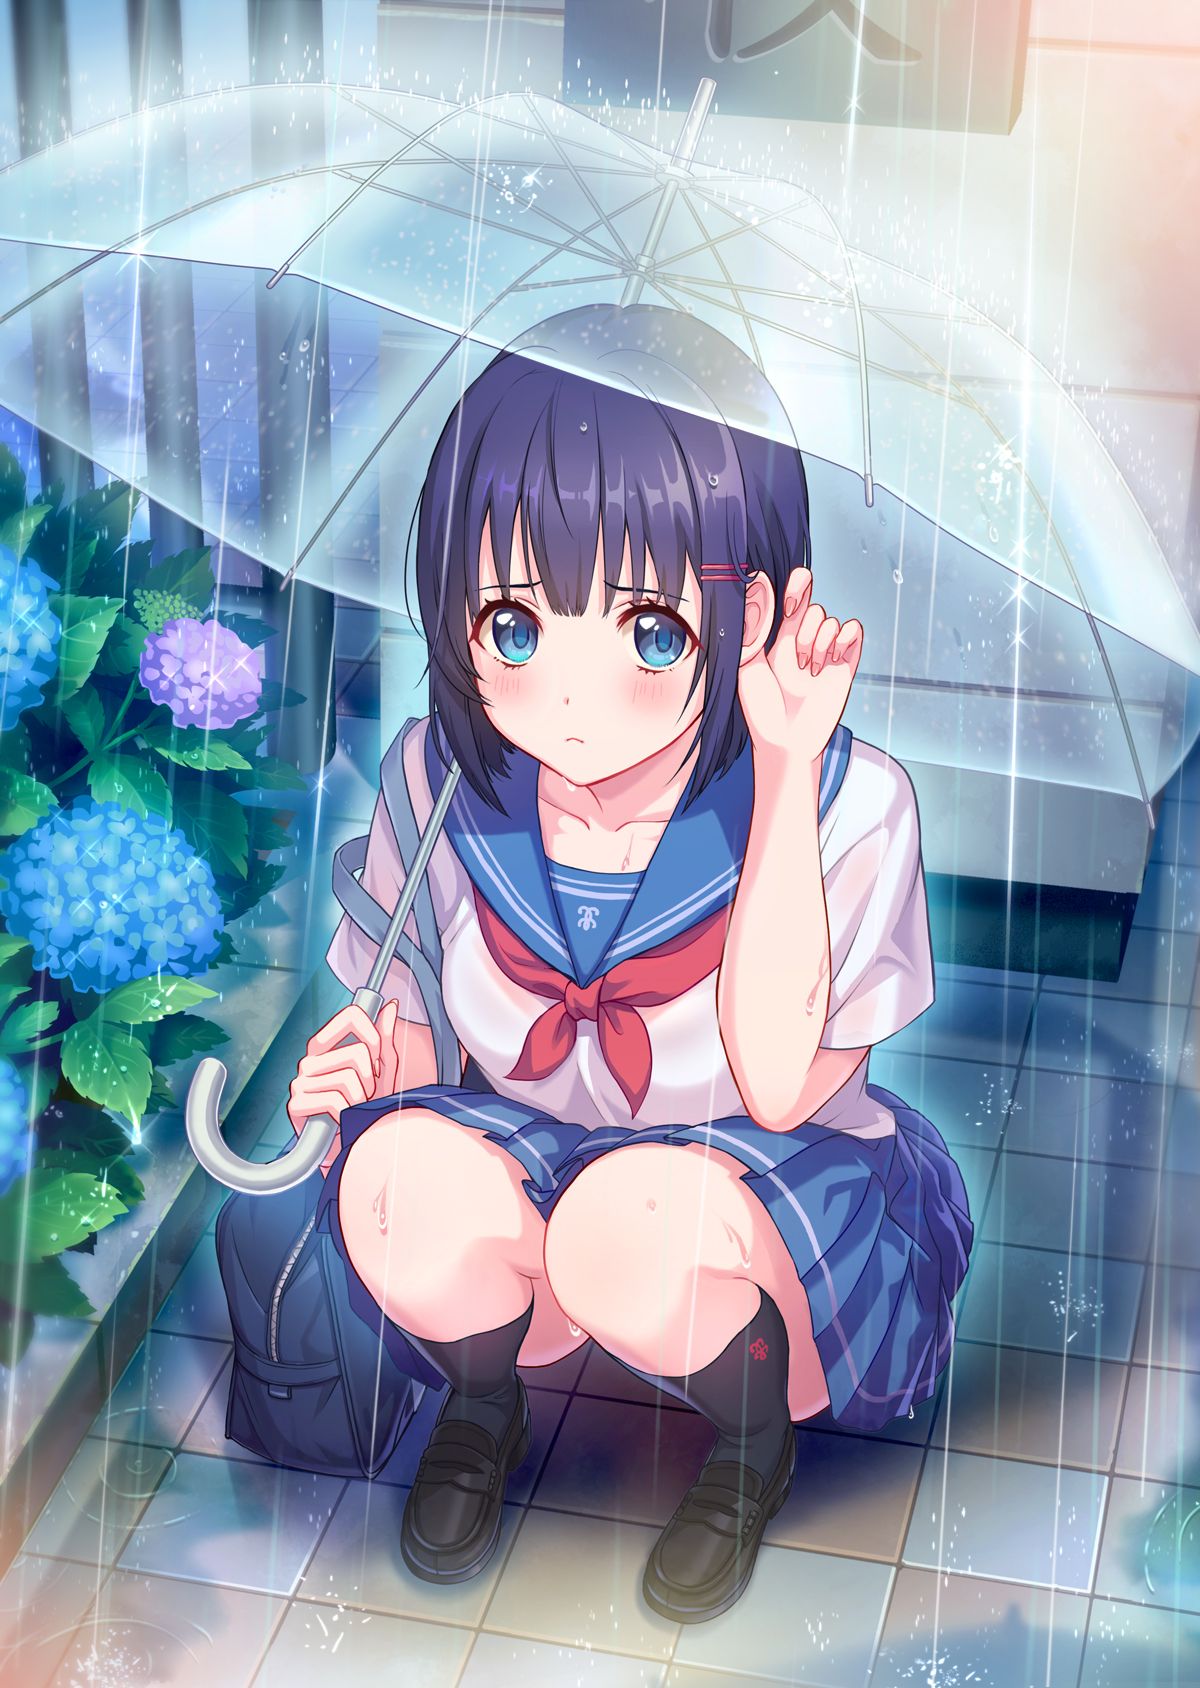 Hình anime nữ sinh tóc tím dưới mưa